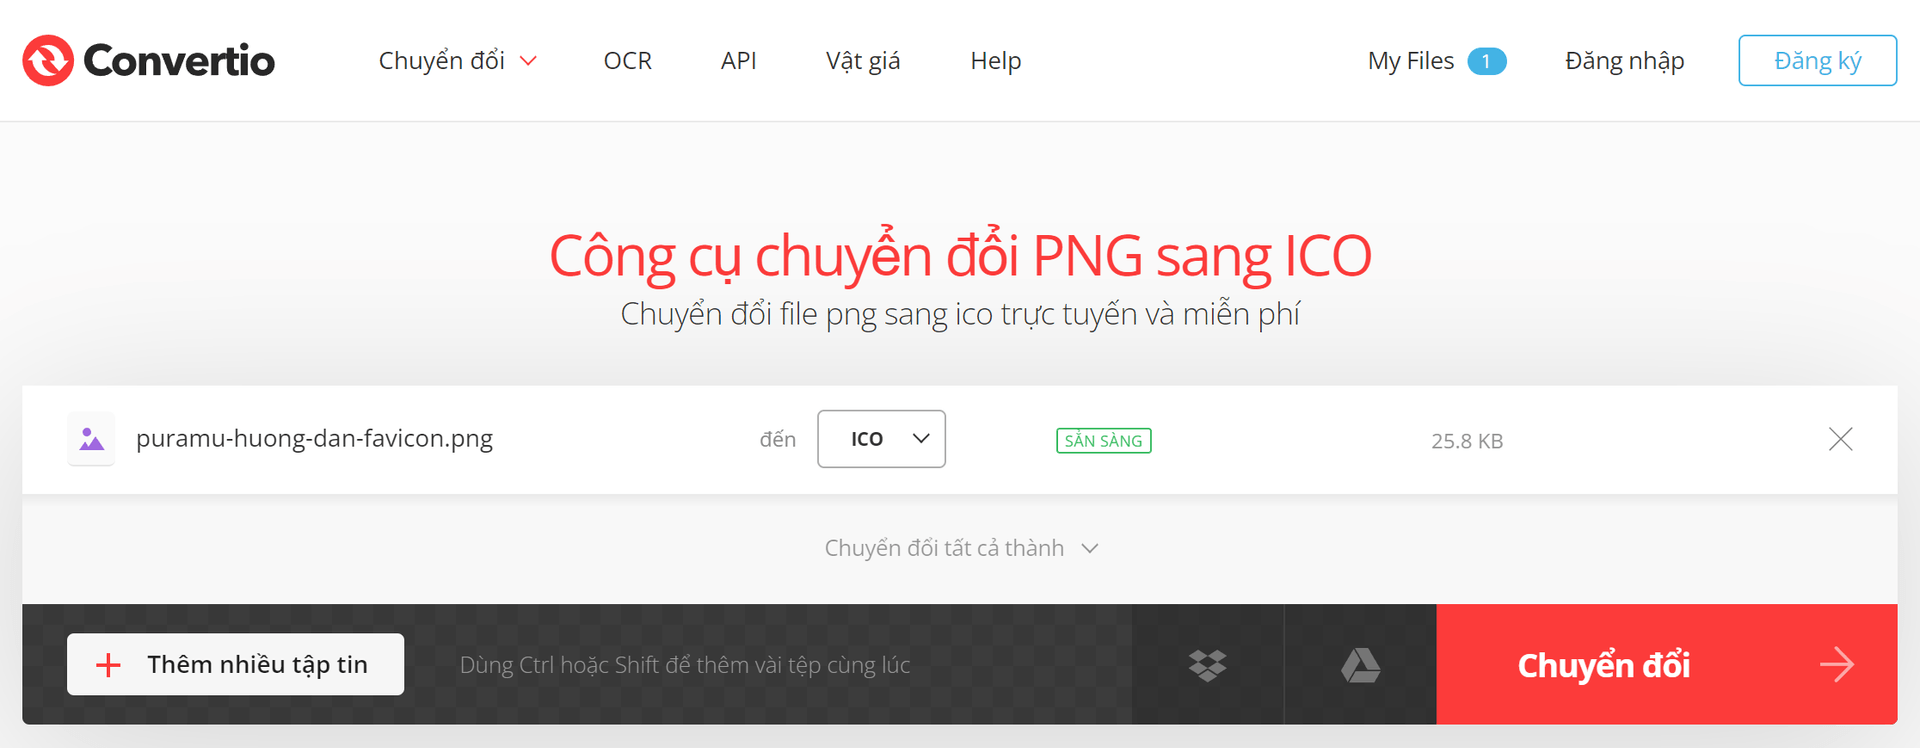 Chuyển đổi file PNG sang ICO với Convertio